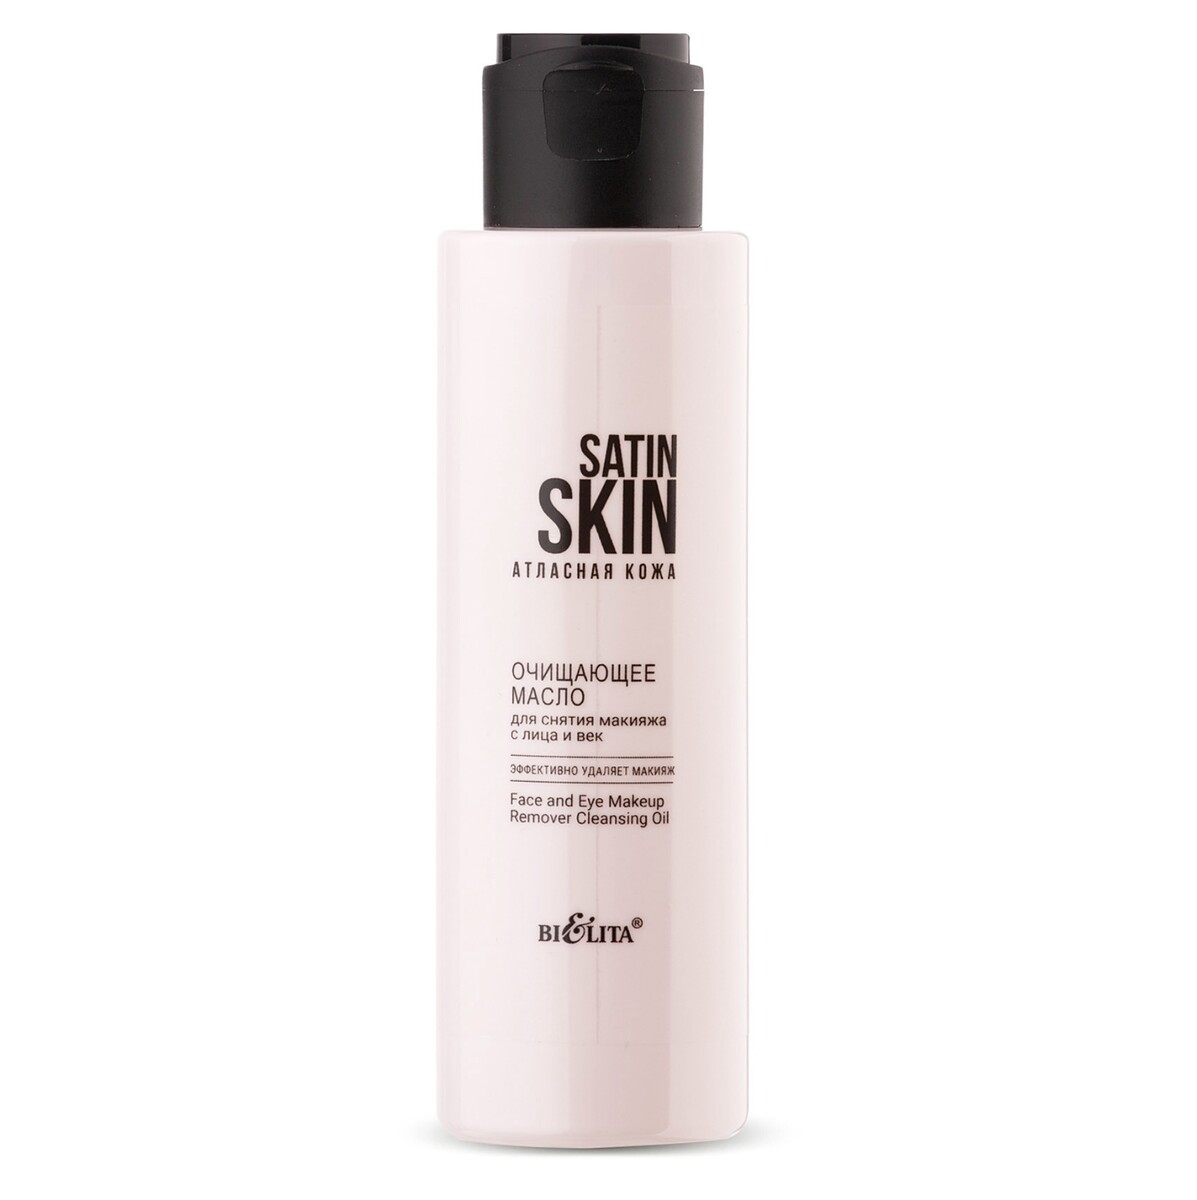 Satin skin атласная кожа масло очищающее для снятия макияжа с лица и век 115мл масло детское для тела после купания 115мл